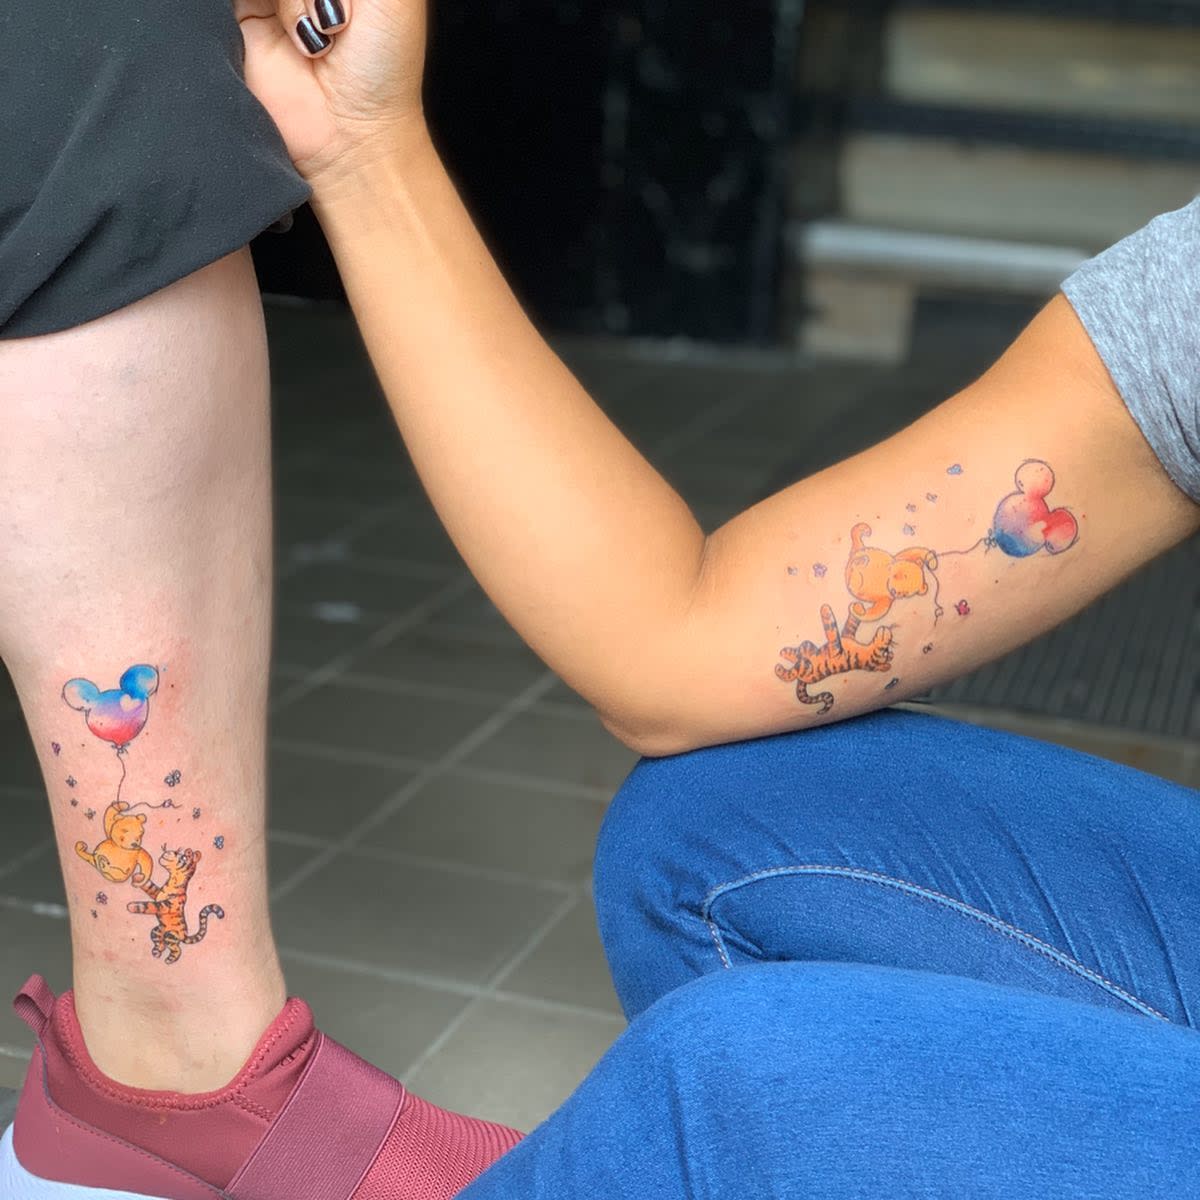 Winnie the pooh tattoo idea | TattoosAI